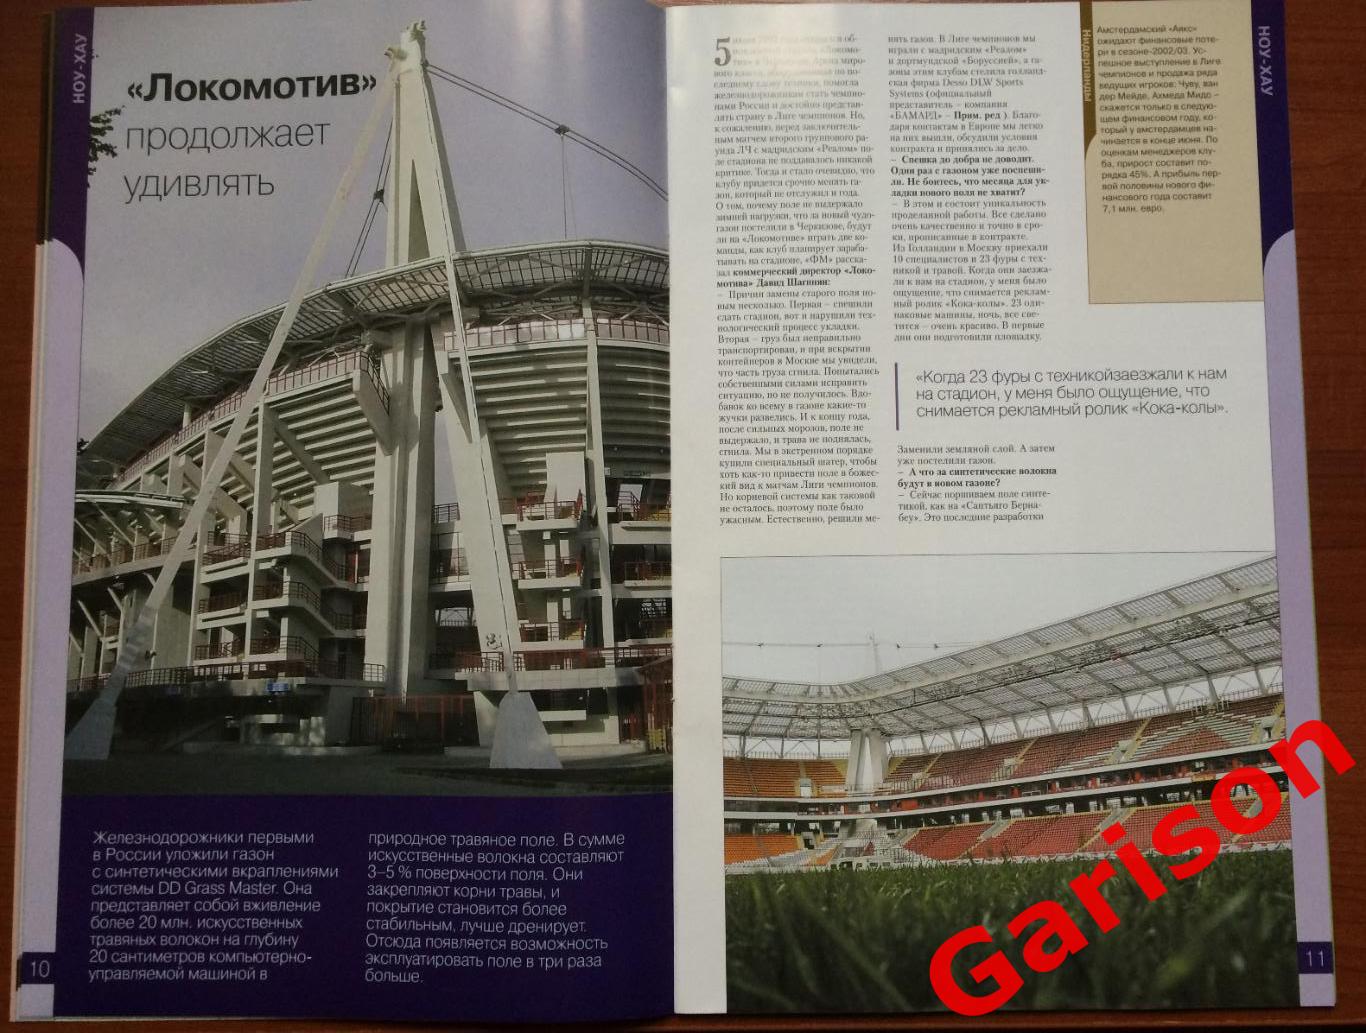 Журнал Футбол Маркет № 1 (10) 2003 год 5